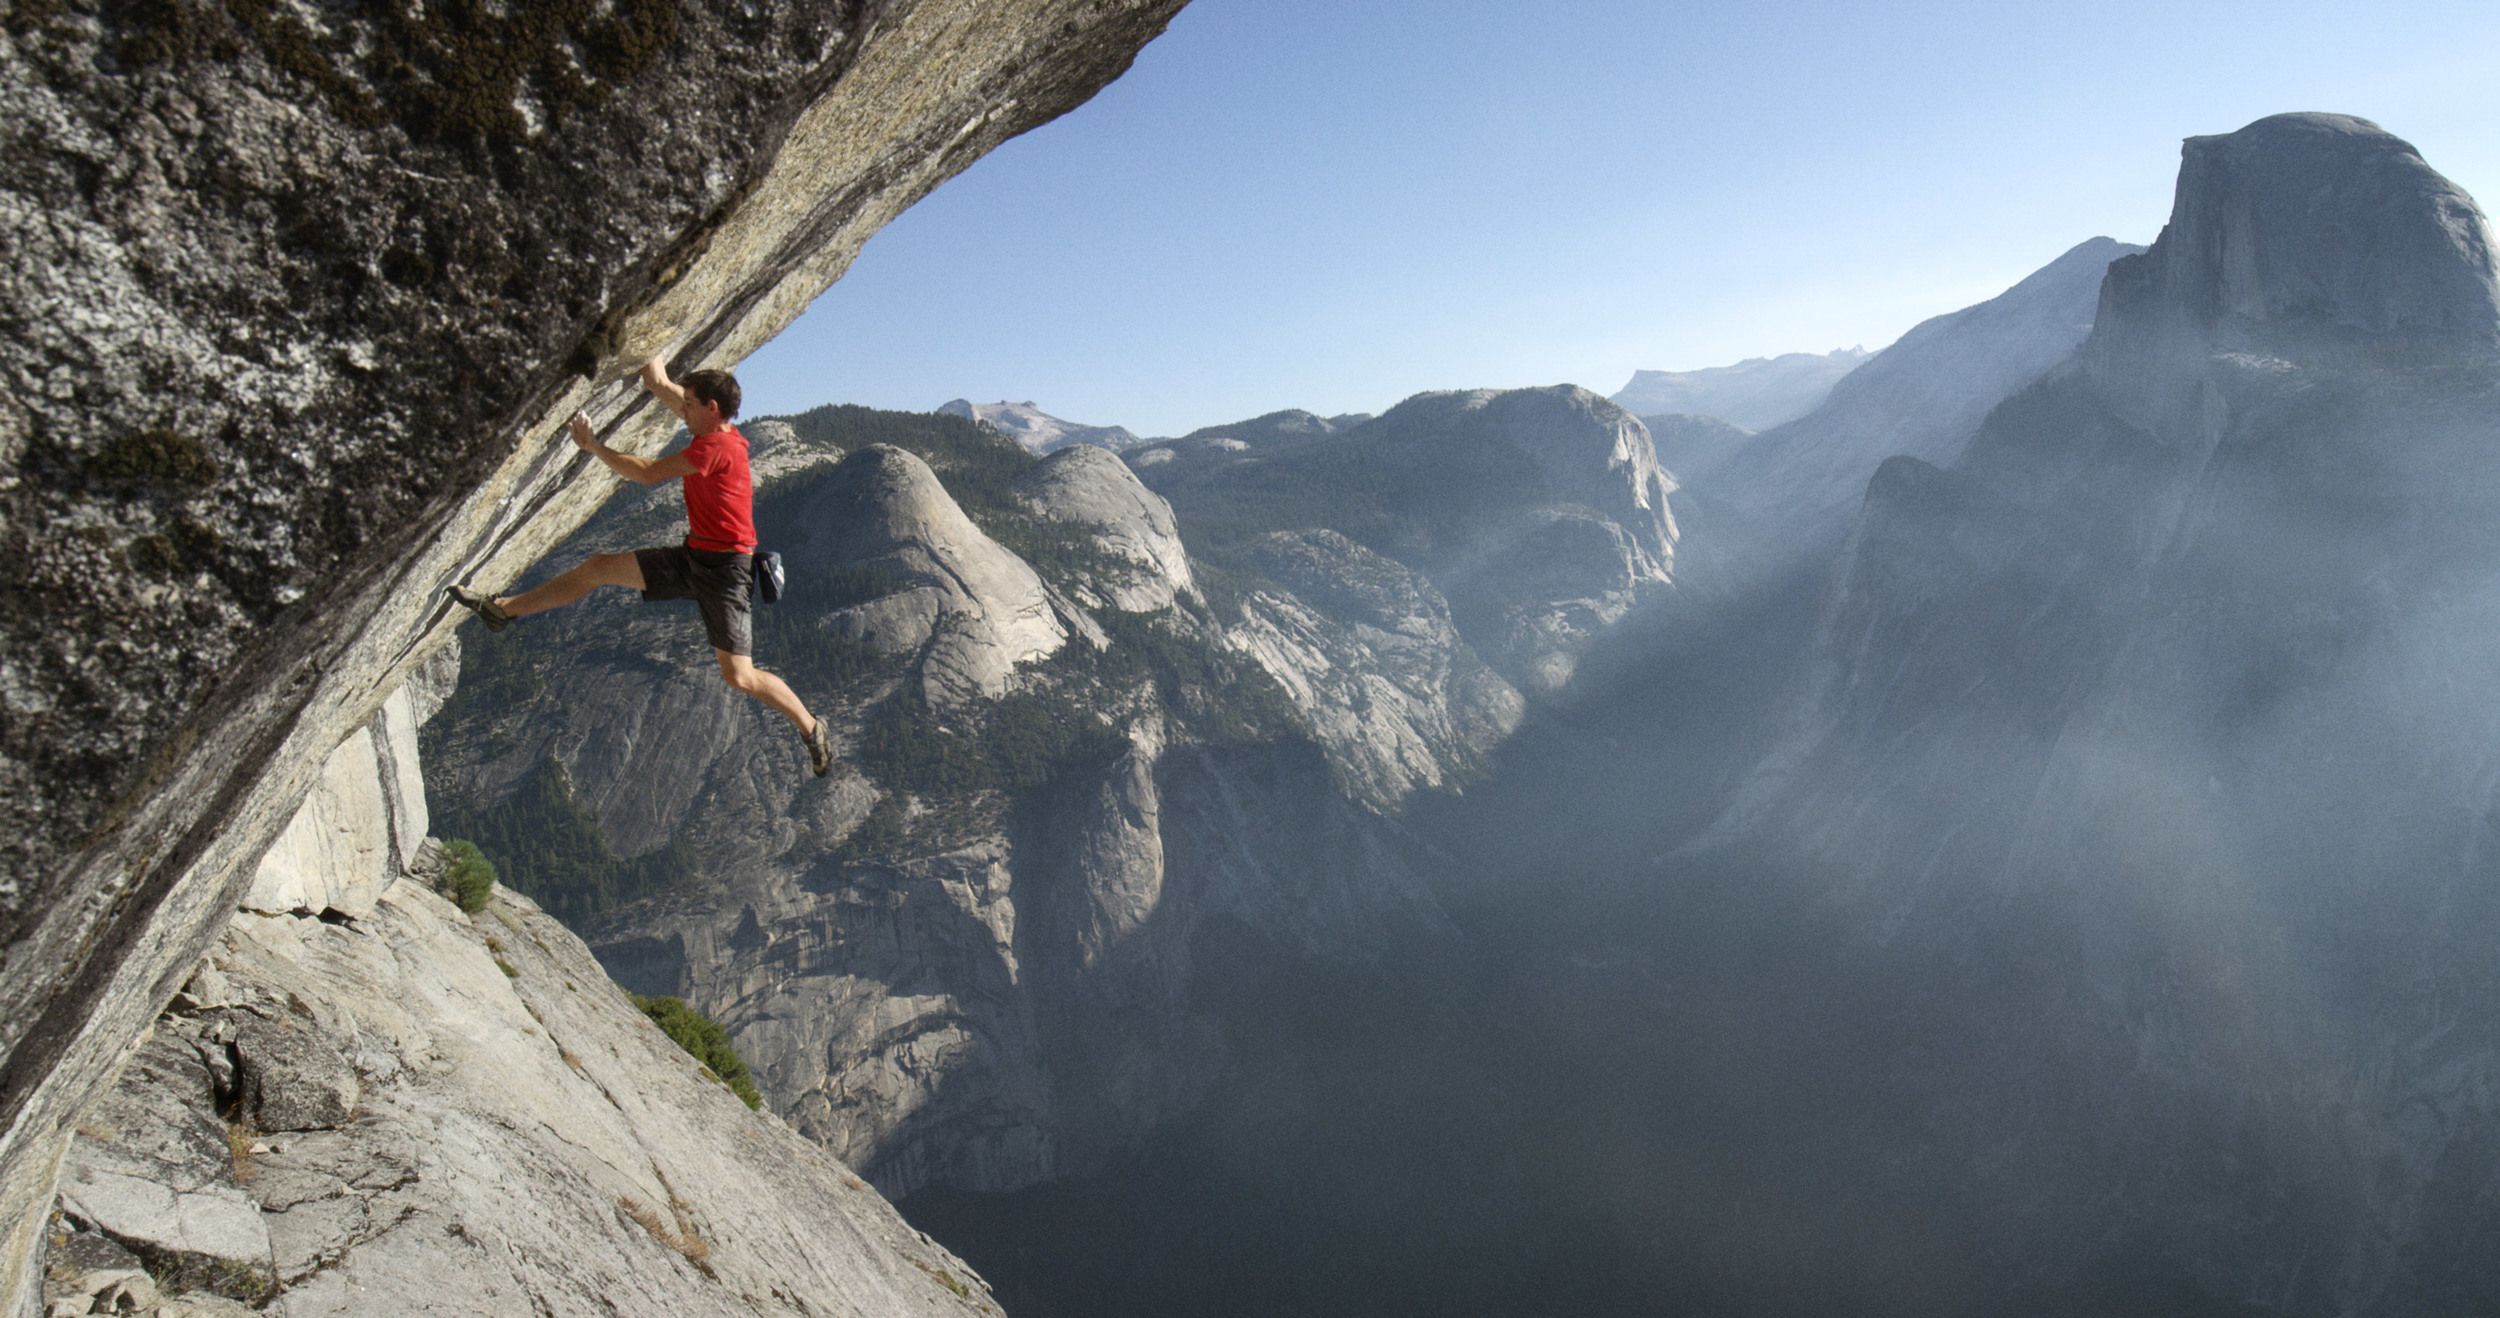 Yosemite Climbing Wallpapers - 4k, HD Yosemite Climbing Backgrounds on ...